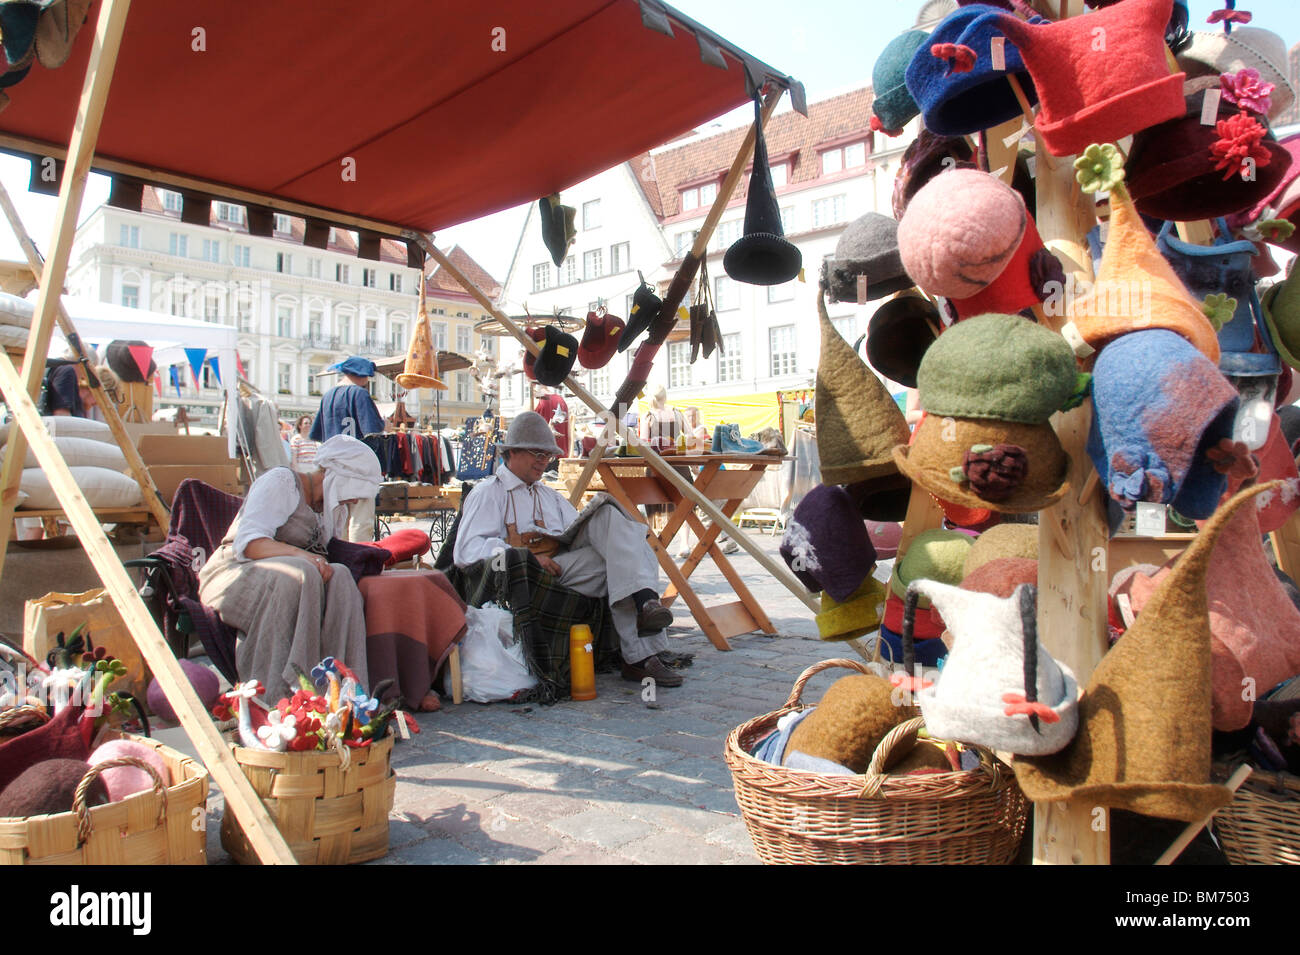 Le personnel de cabine à un marché médiéval au coeur de Tallinn, Estonie Banque D'Images